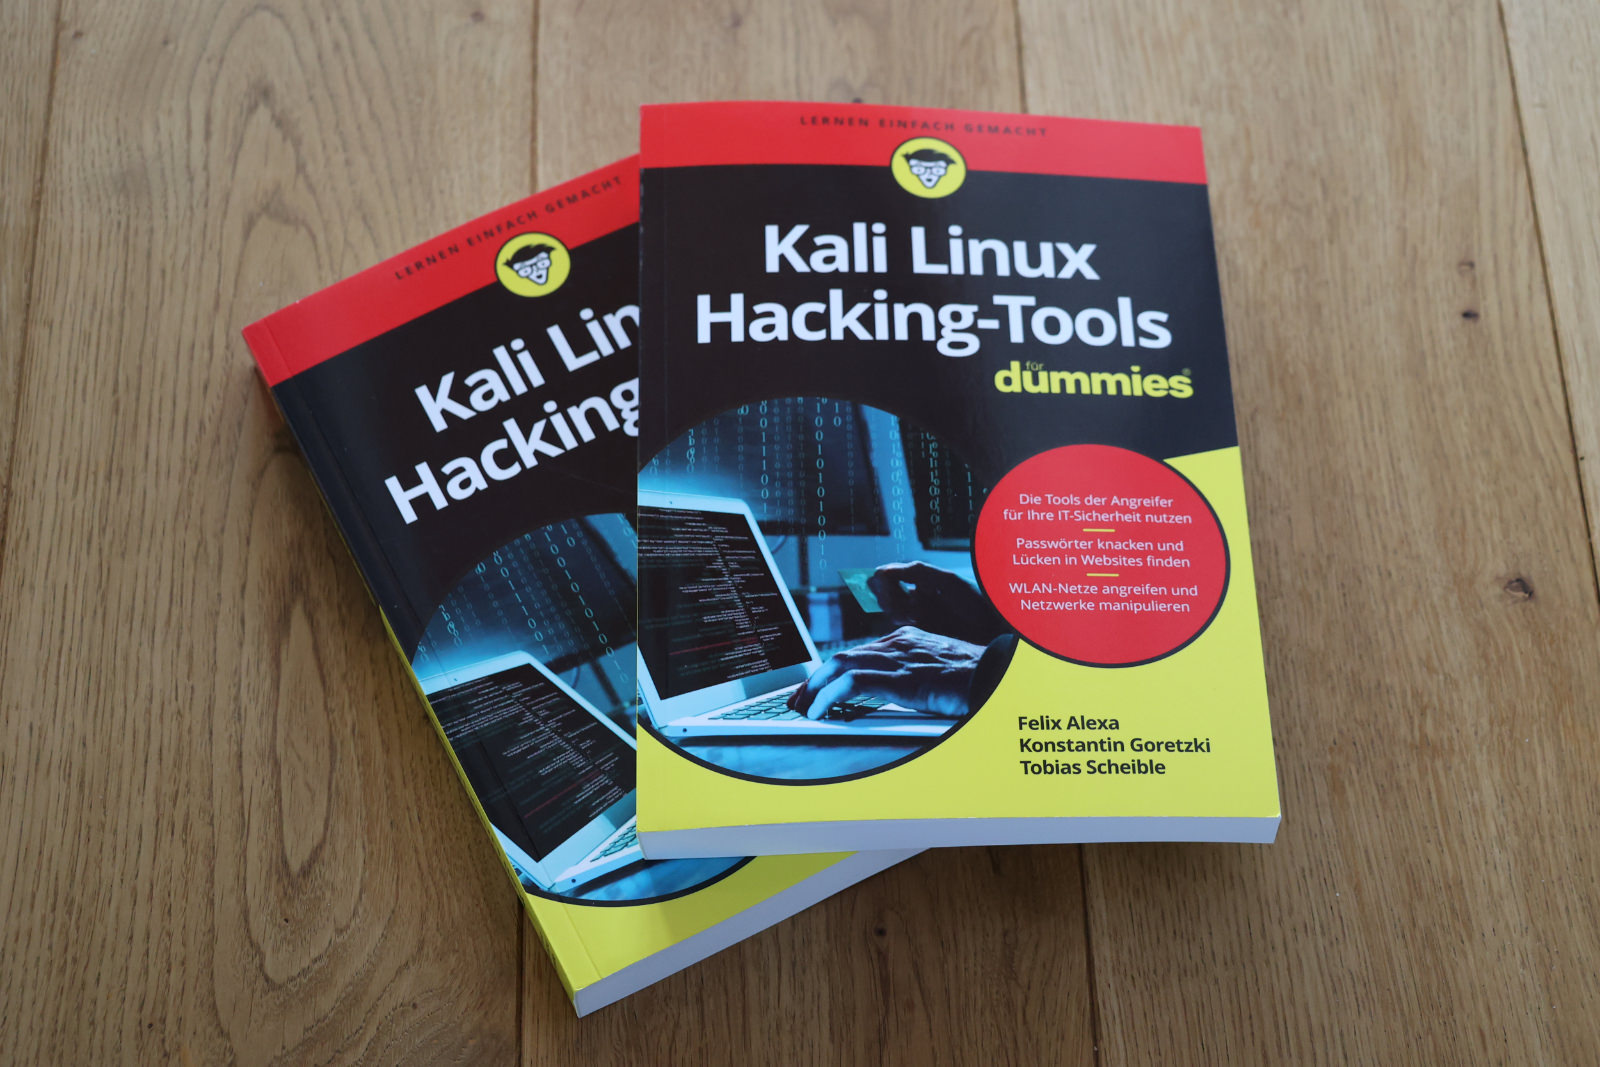 Buch über Kali Linux